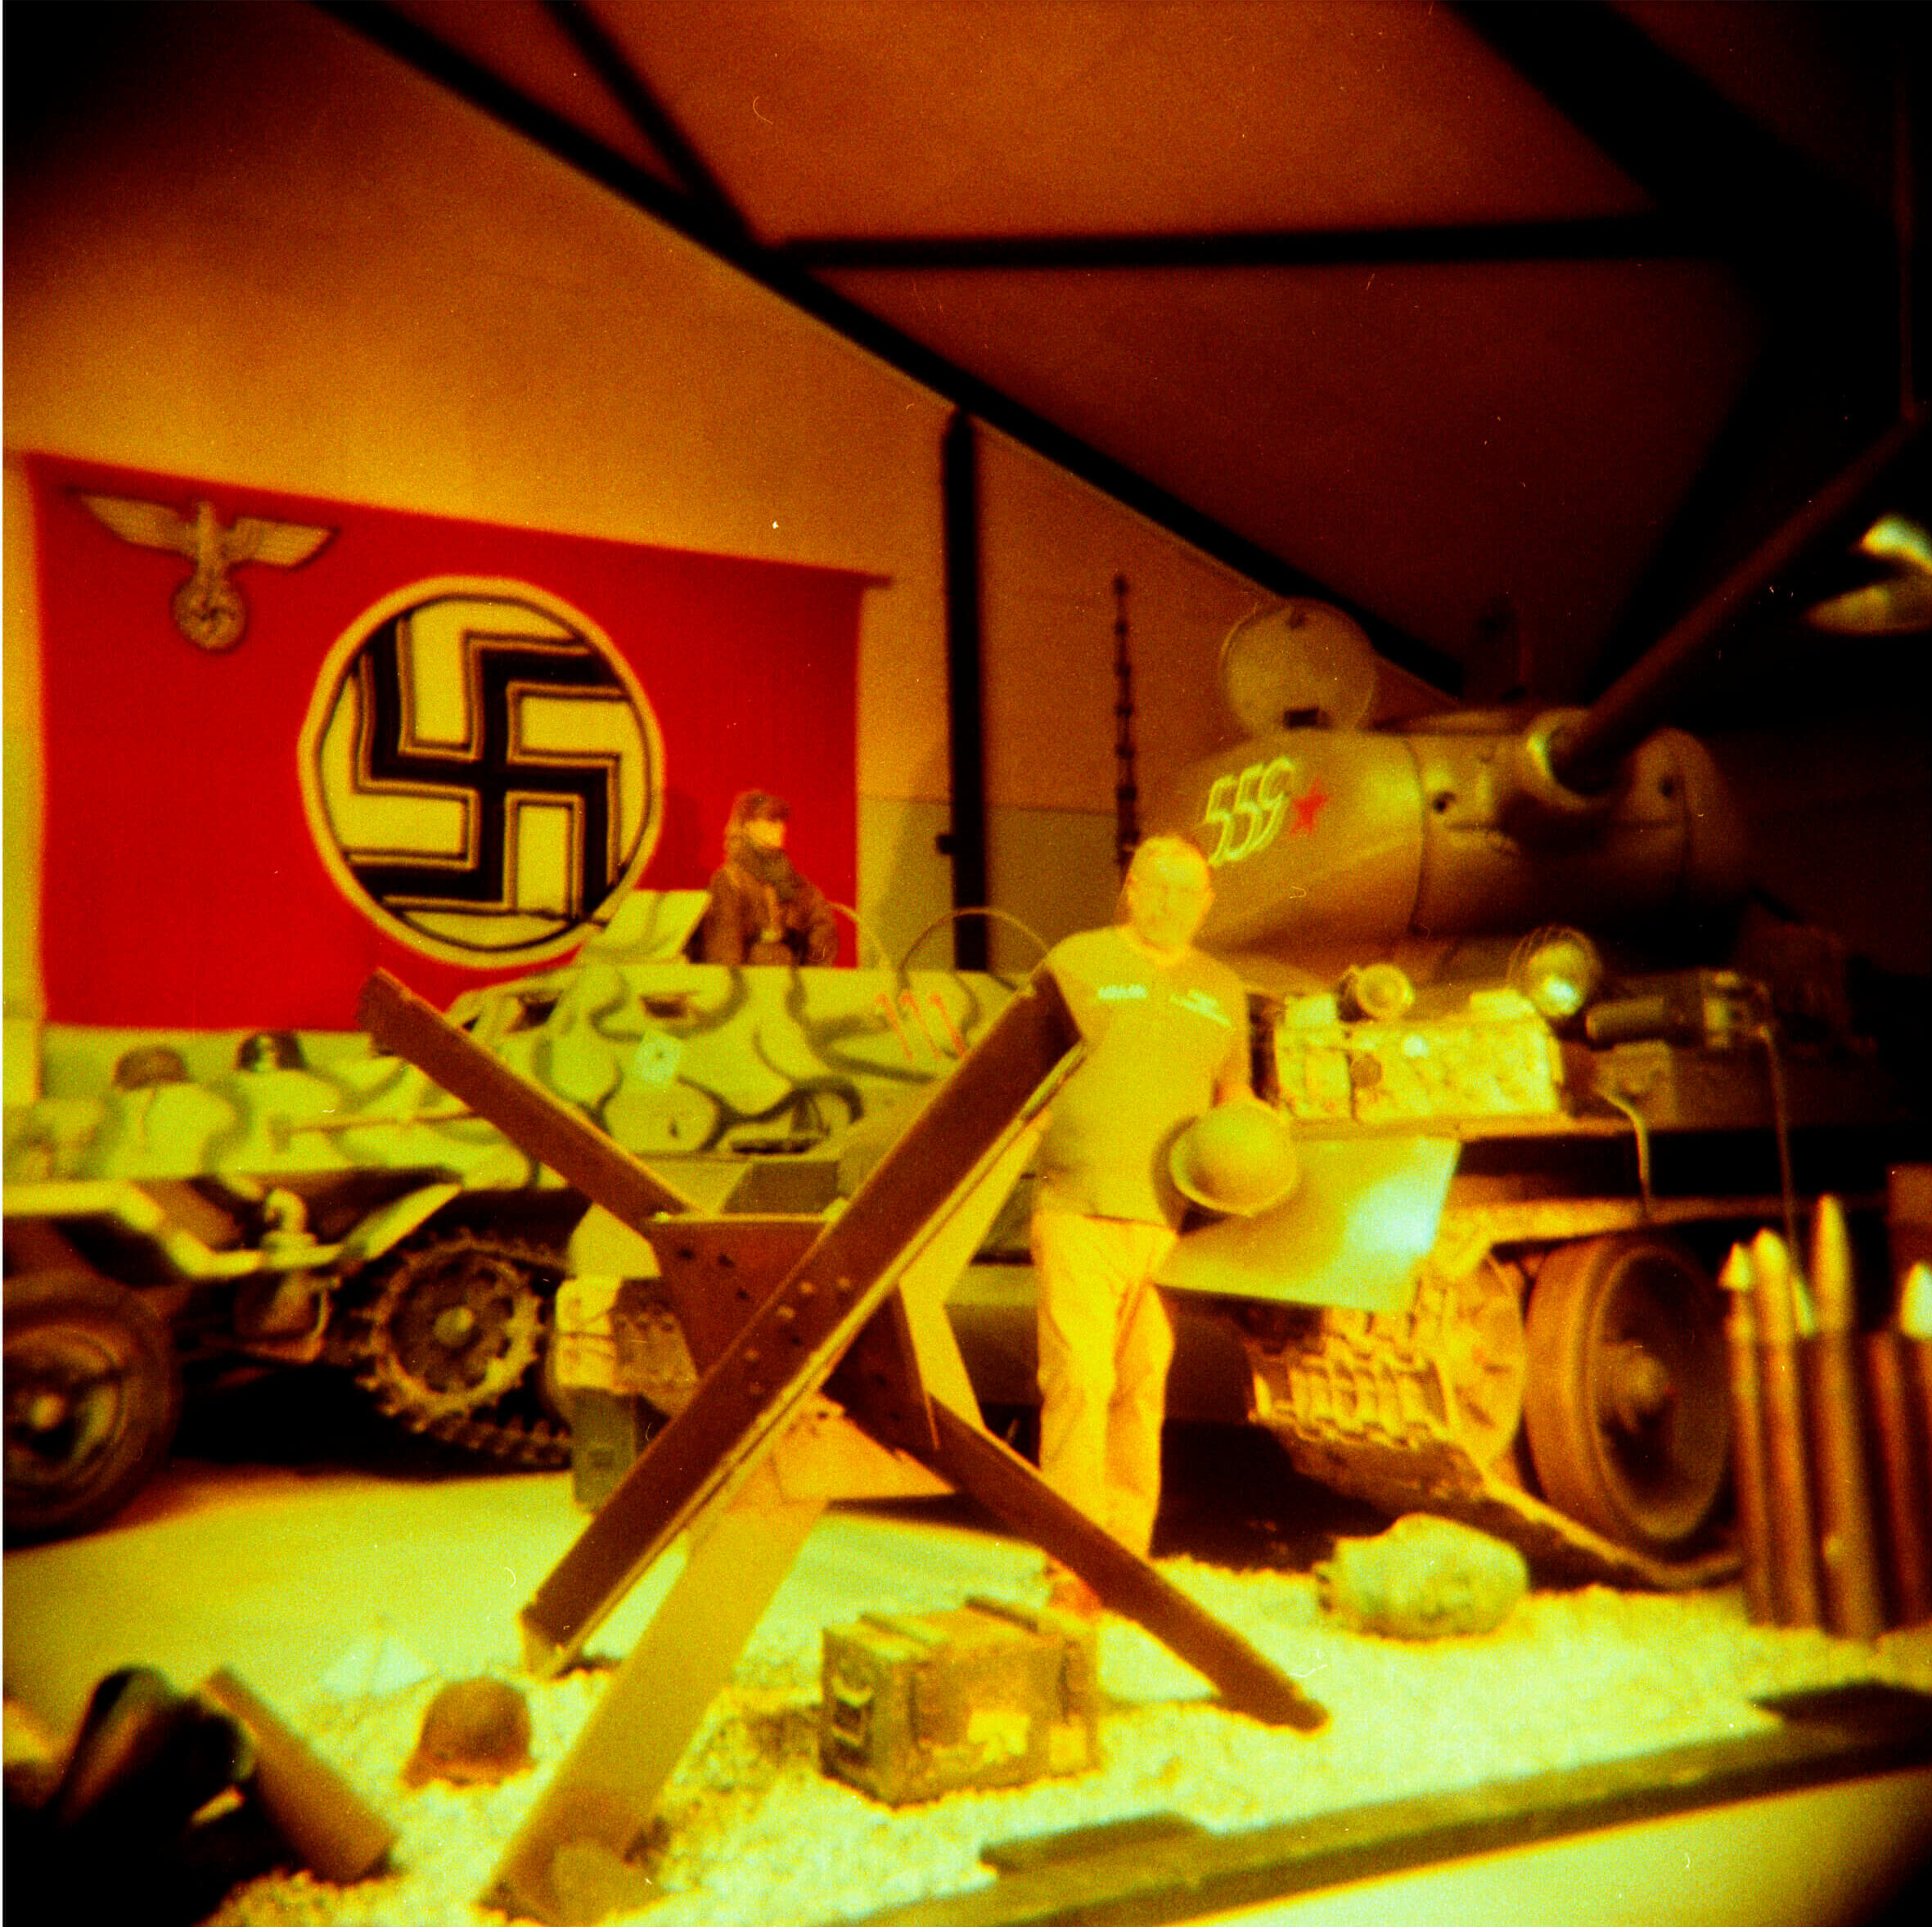 Featured image for “Ole opbevarer sin enorme samling fra 2. Verdenskrig i to bunkere – heriblandt et nazi-flag fremstillet af Hitler”